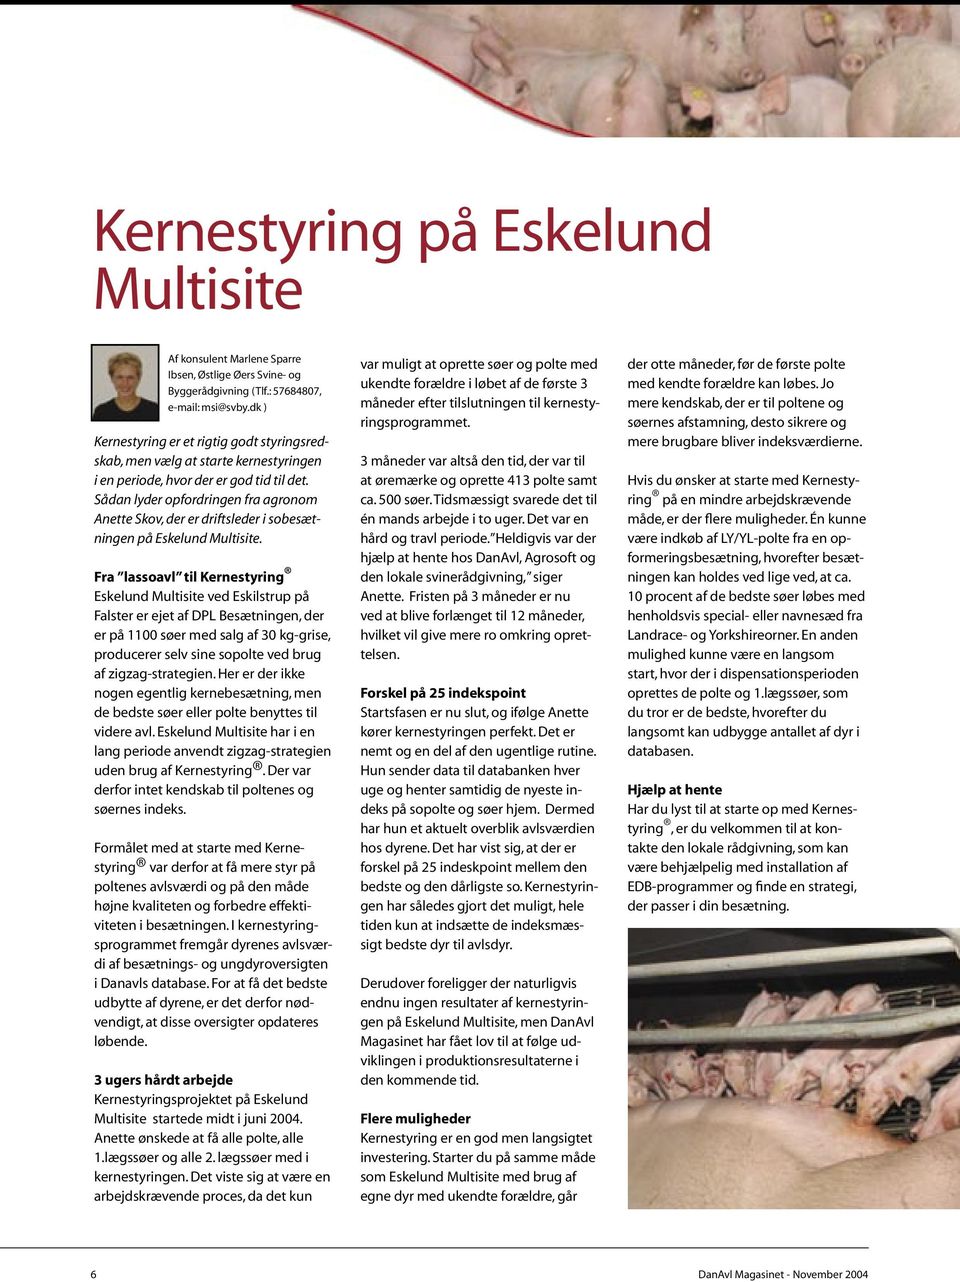 Sådan lyder opfordringen fra agronom Anette Skov, der er driftsleder i sobesætningen på Eskelund Multisite.